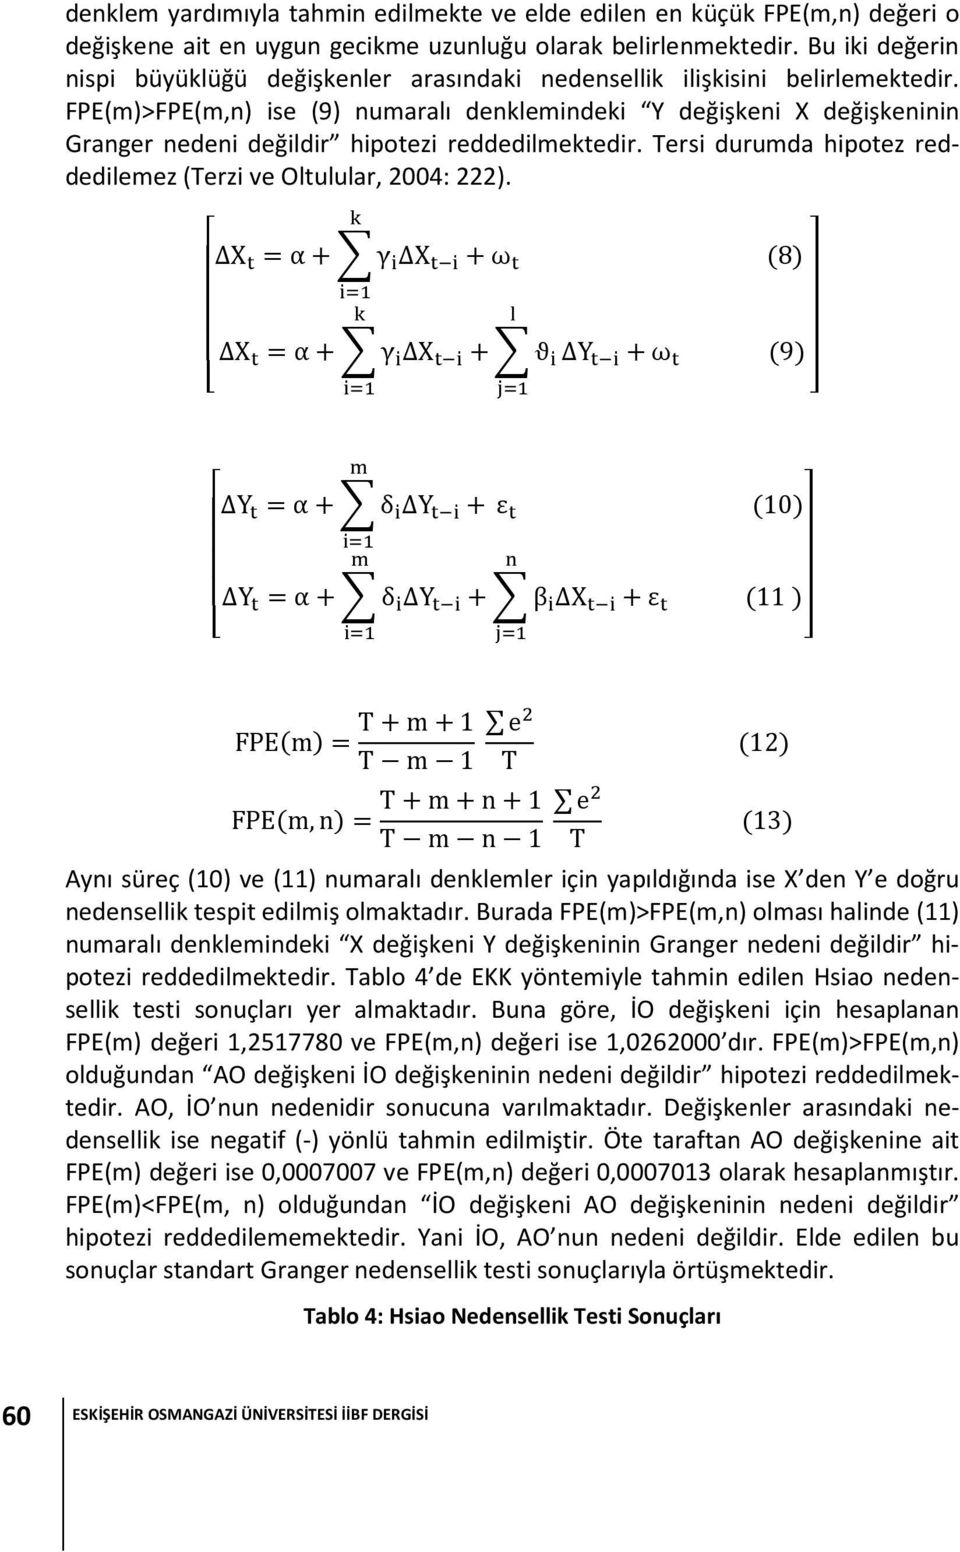 FPE(m)>FPE(m,n) ise (9) numaralı denklemindeki Y değişkeni X değişkeninin Granger nedeni değildir hipotezi reddedilmektedir. Tersi durumda hipotez reddedilemez (Terzi ve Oltulular, 2004: 222).